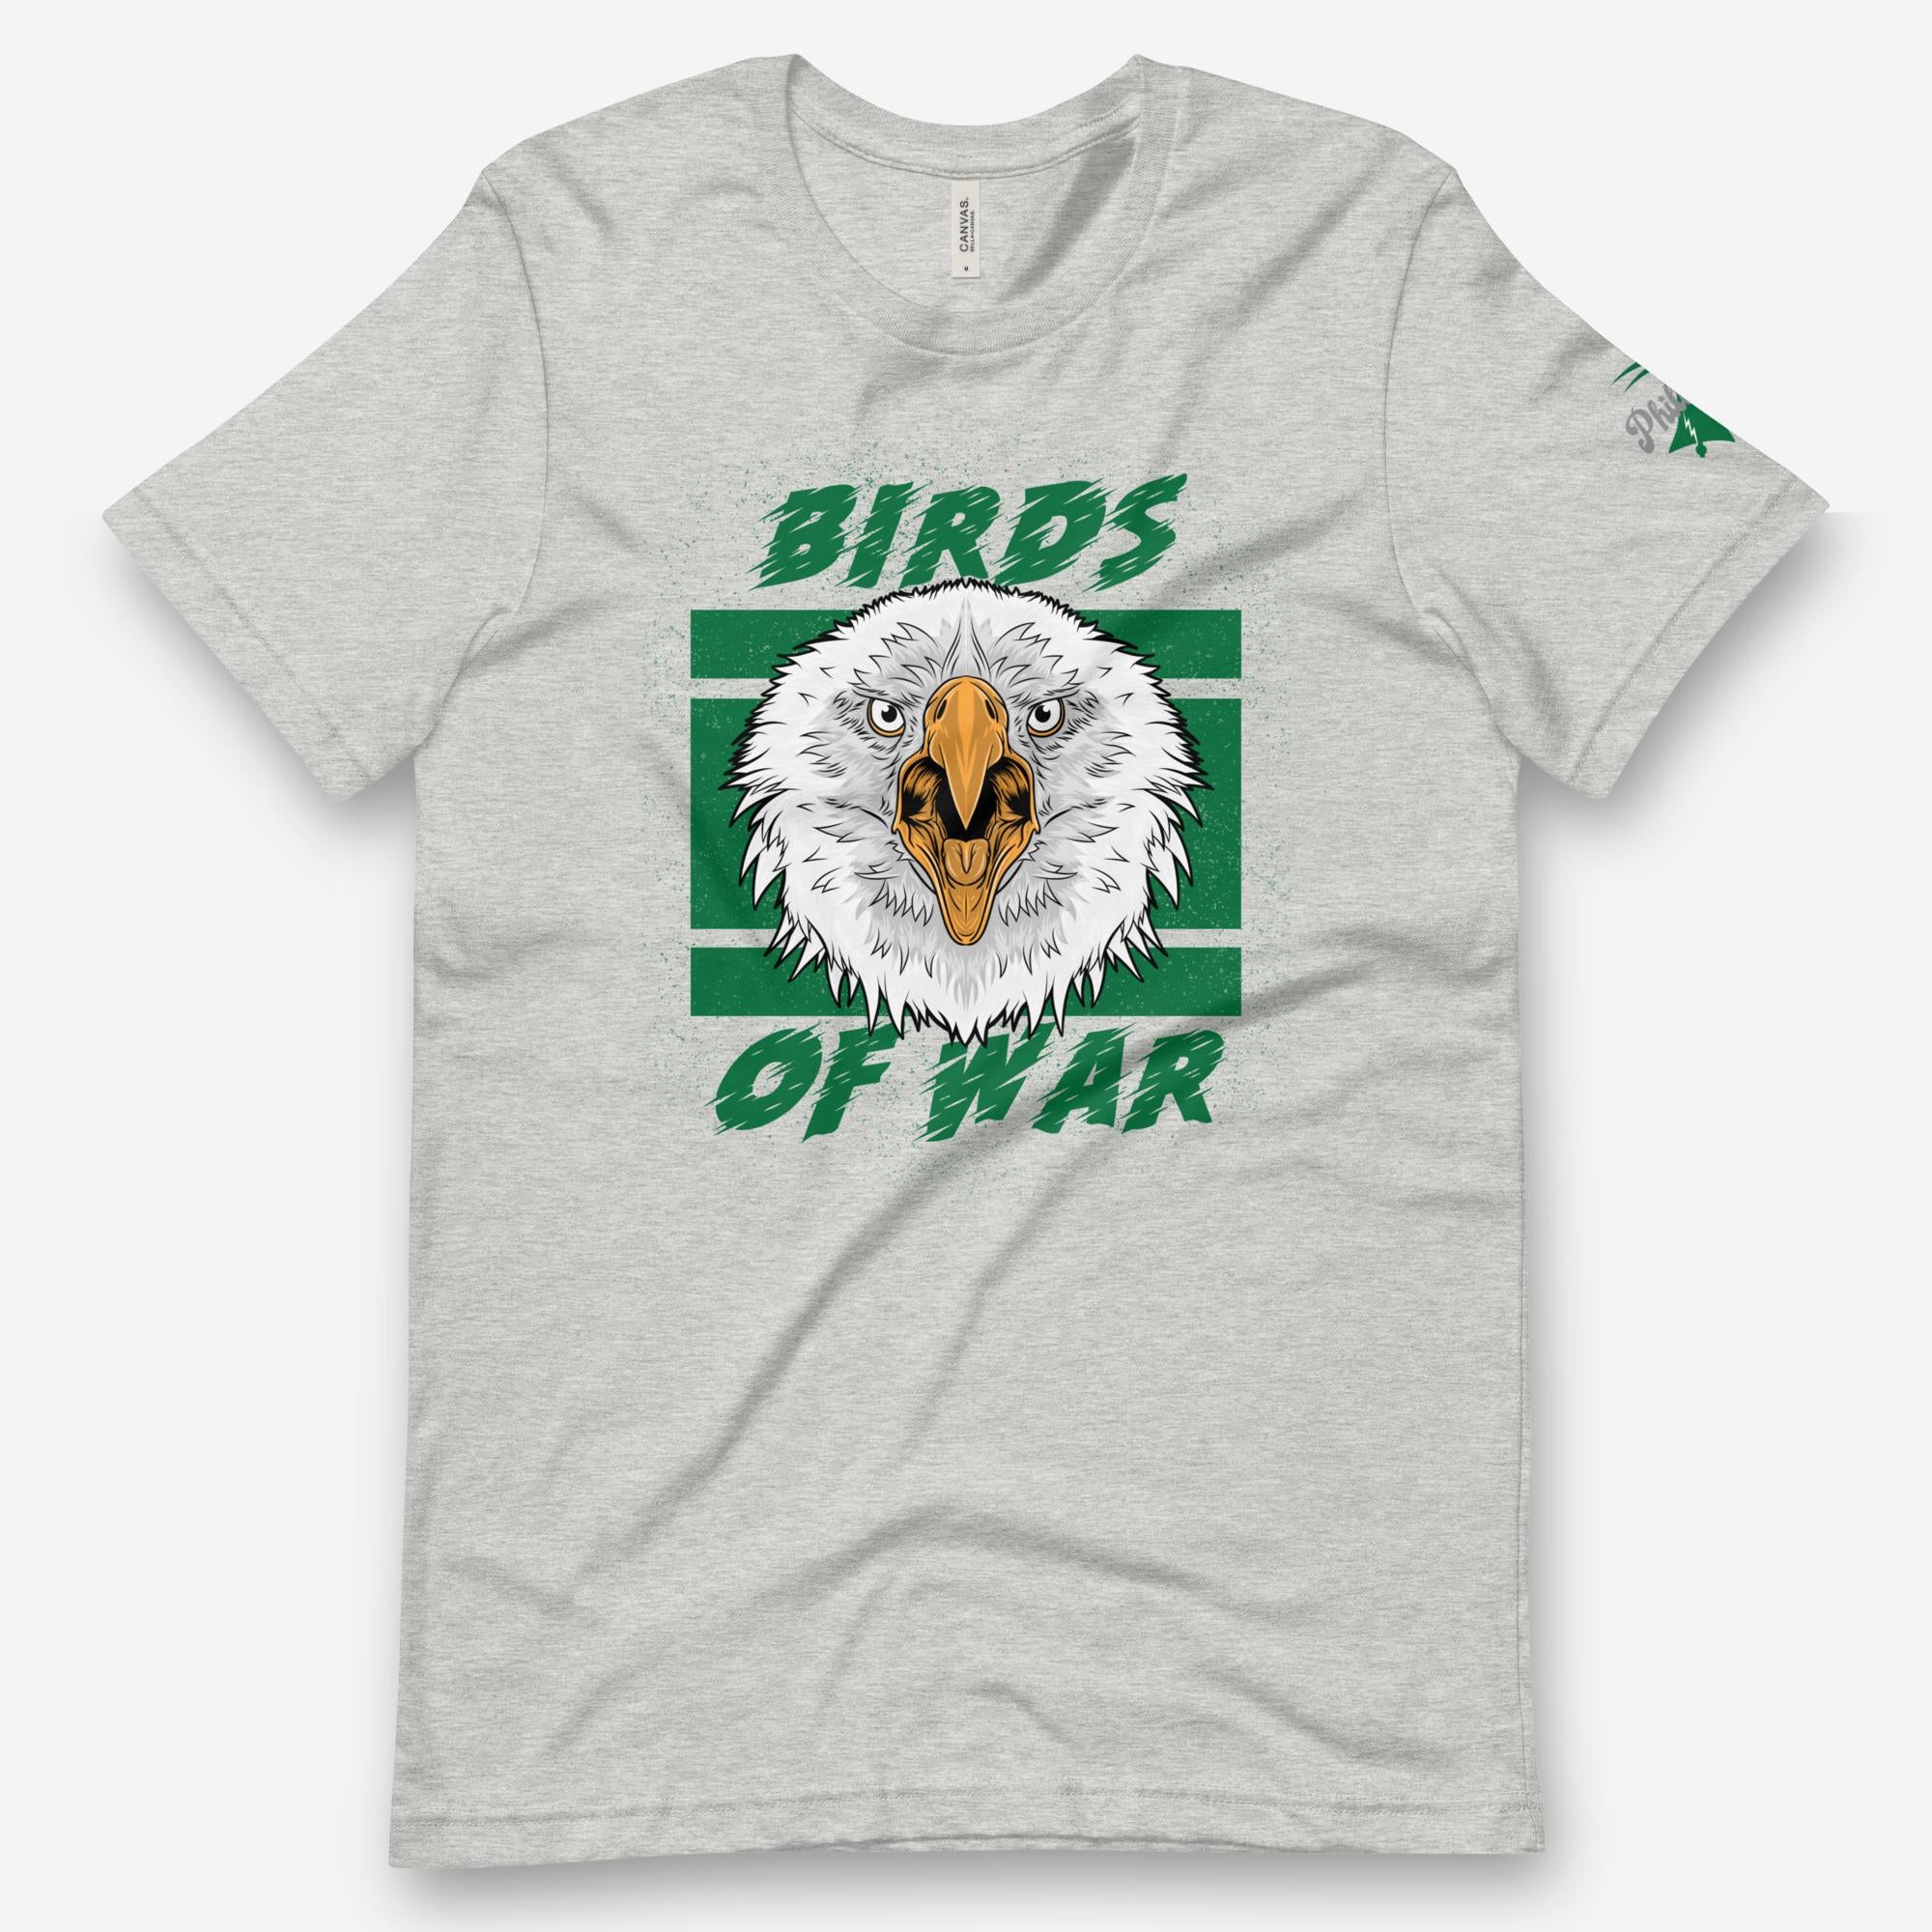 "Birds of War" Tee